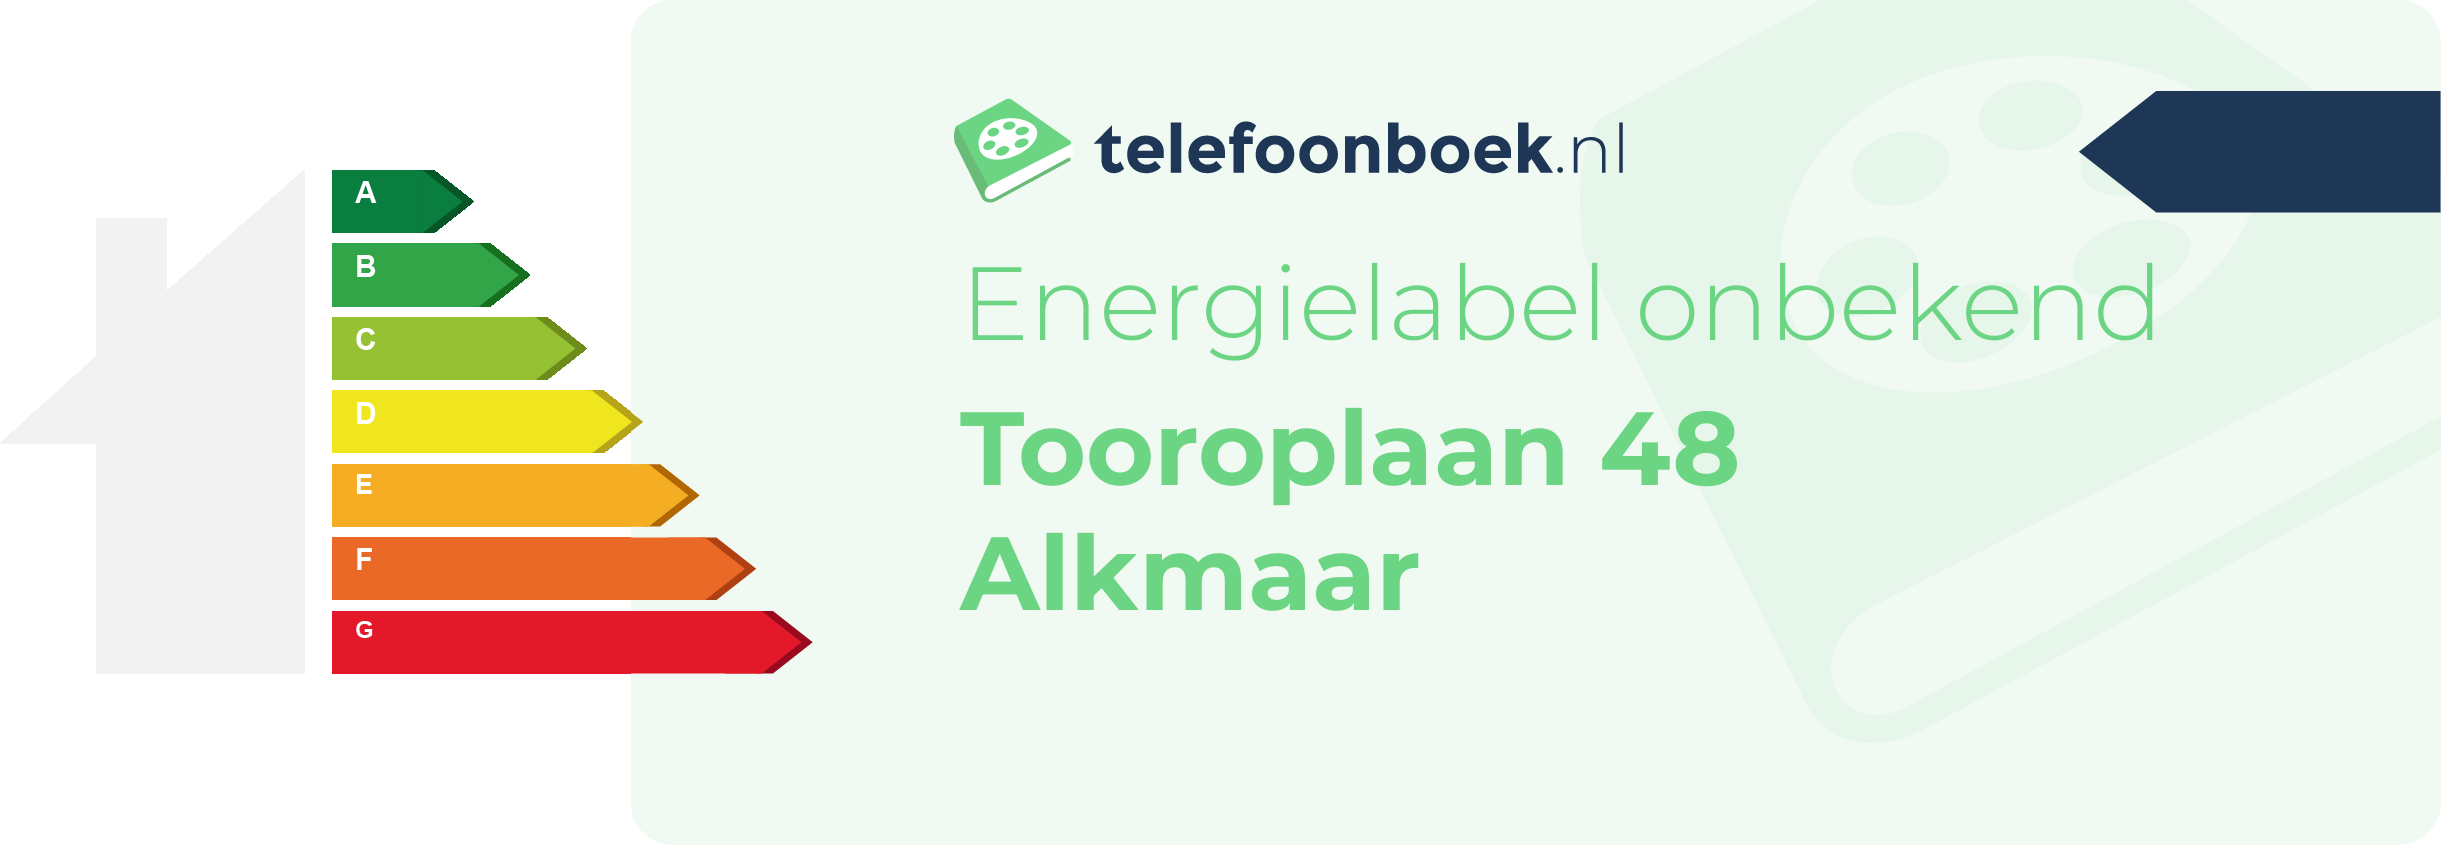 Energielabel Tooroplaan 48 Alkmaar